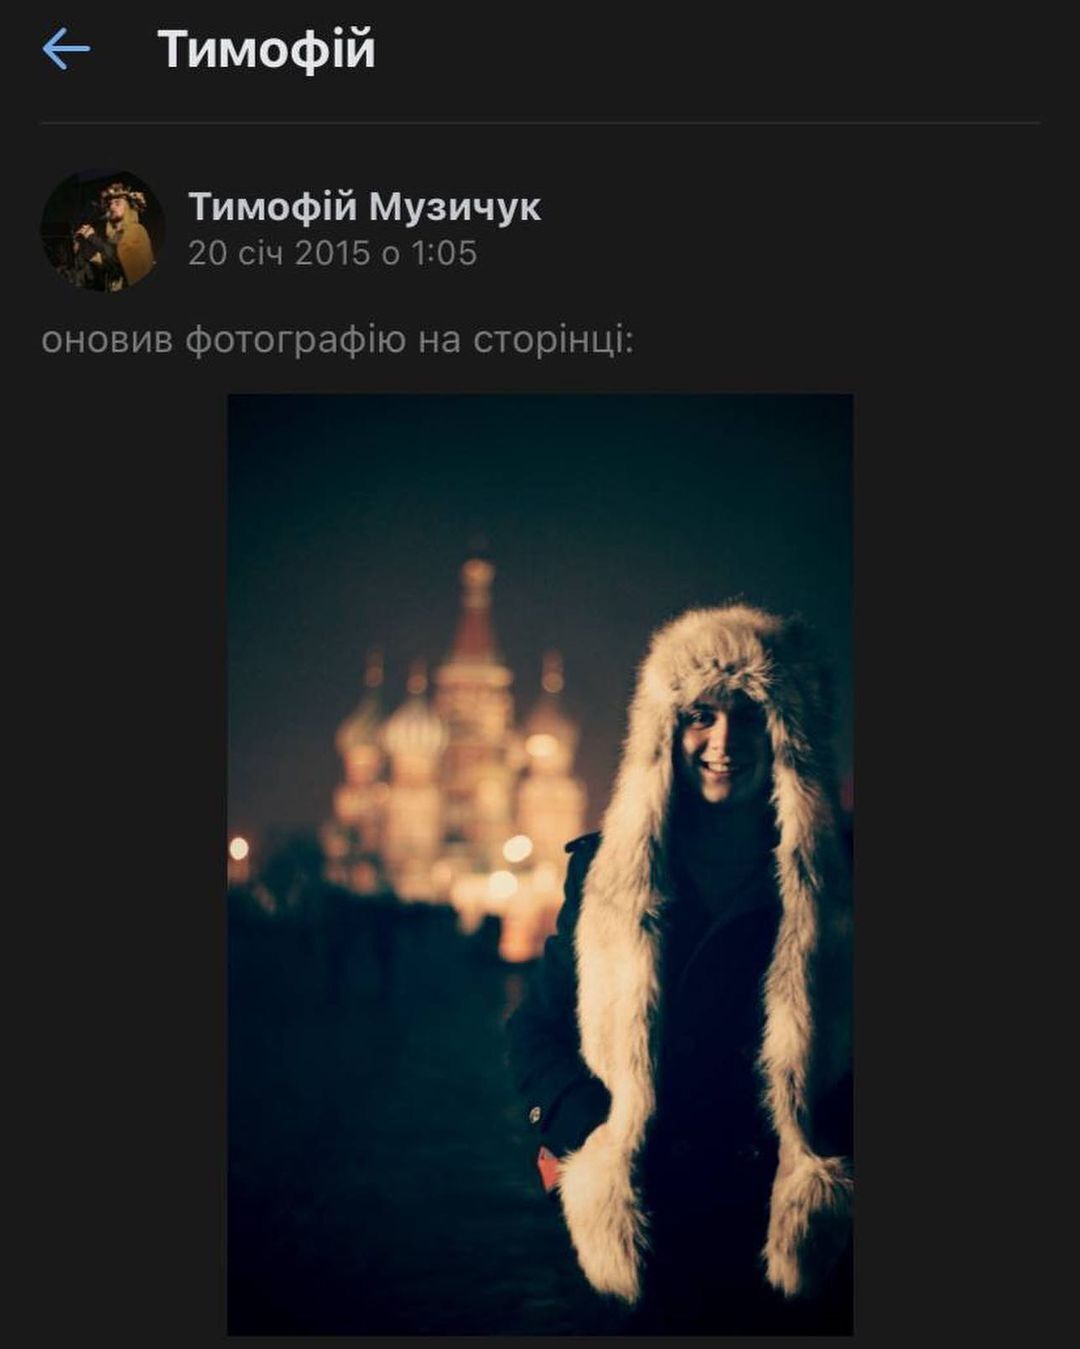 Музычук делился фото на фоне Собора Василия Блаженного в Москве